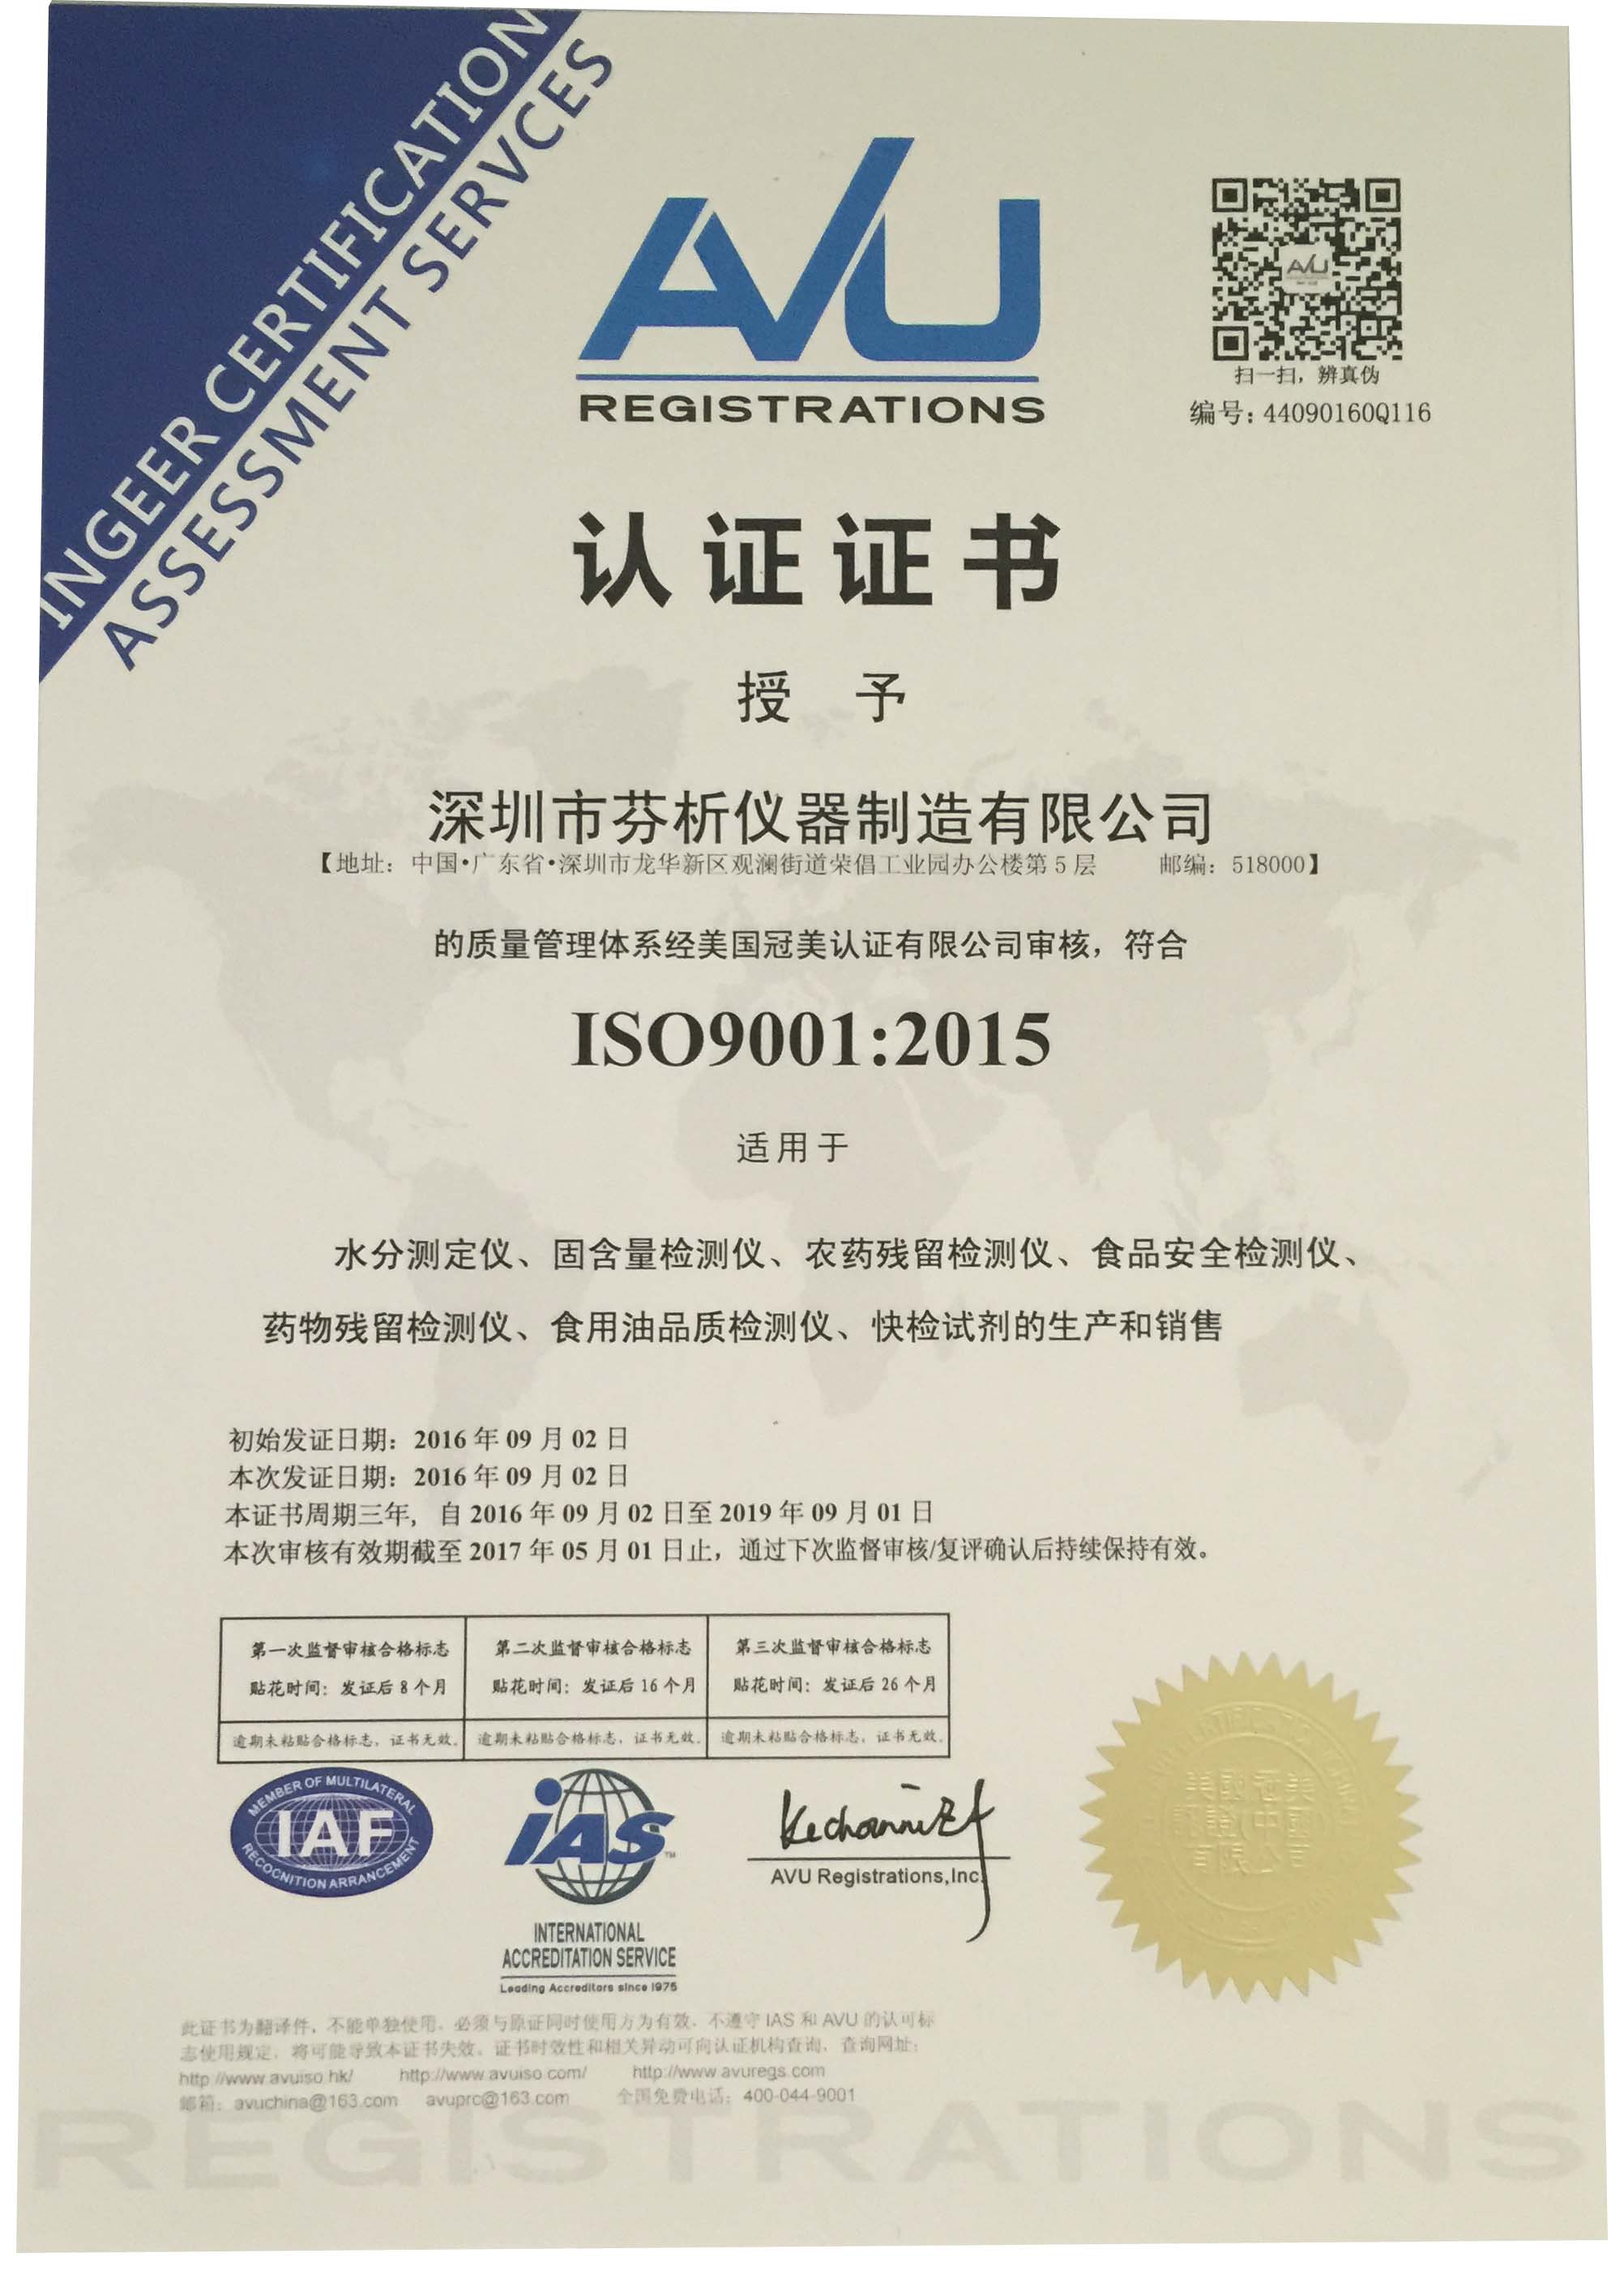 我公司顺利通过ISO9001质量管理体系认证审核